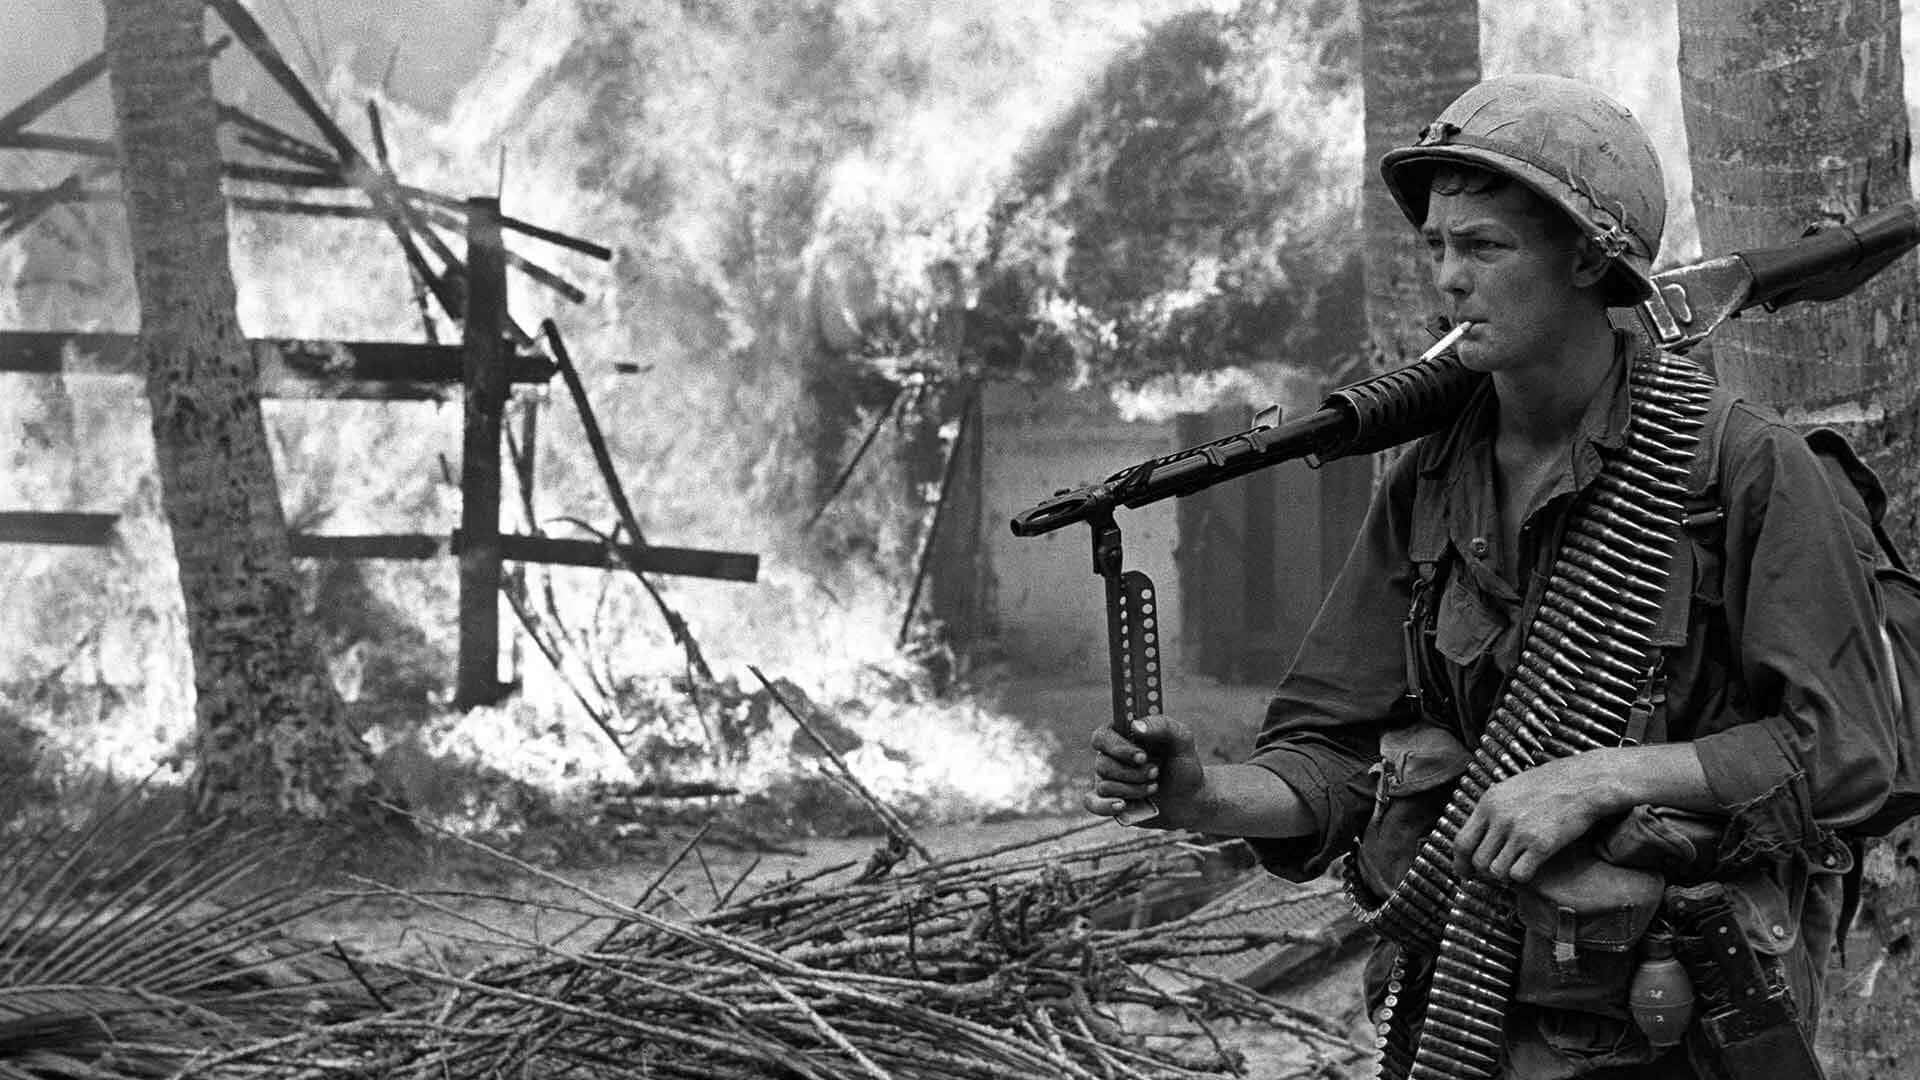 Imagende La Guerra De Vietnam Con Fumadores